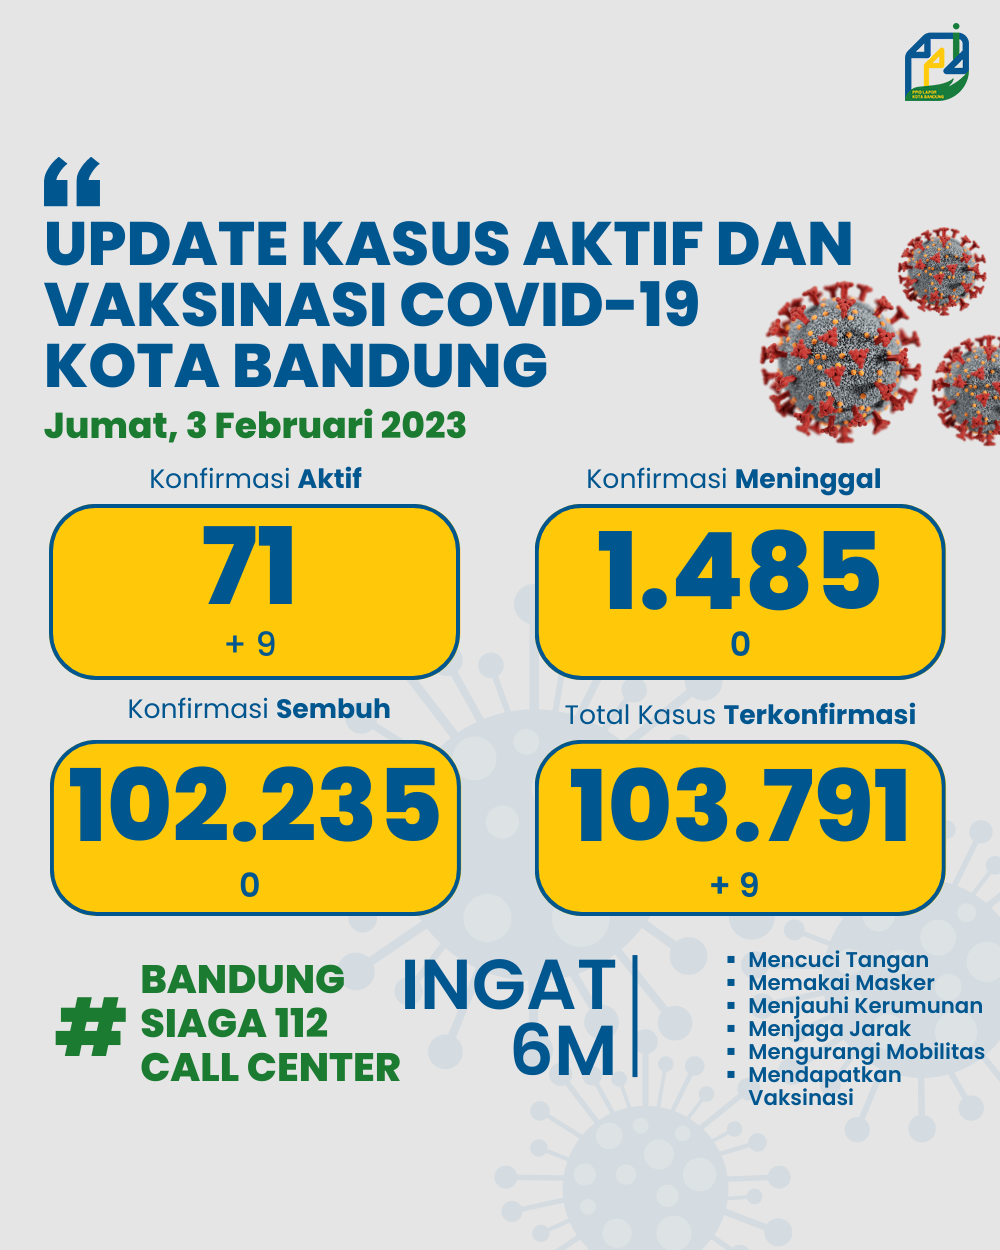 UPDATE STATISTIK COVID-19 DI KOTA BANDUNG PER TANGGAL 3 FEBRUARI 2023